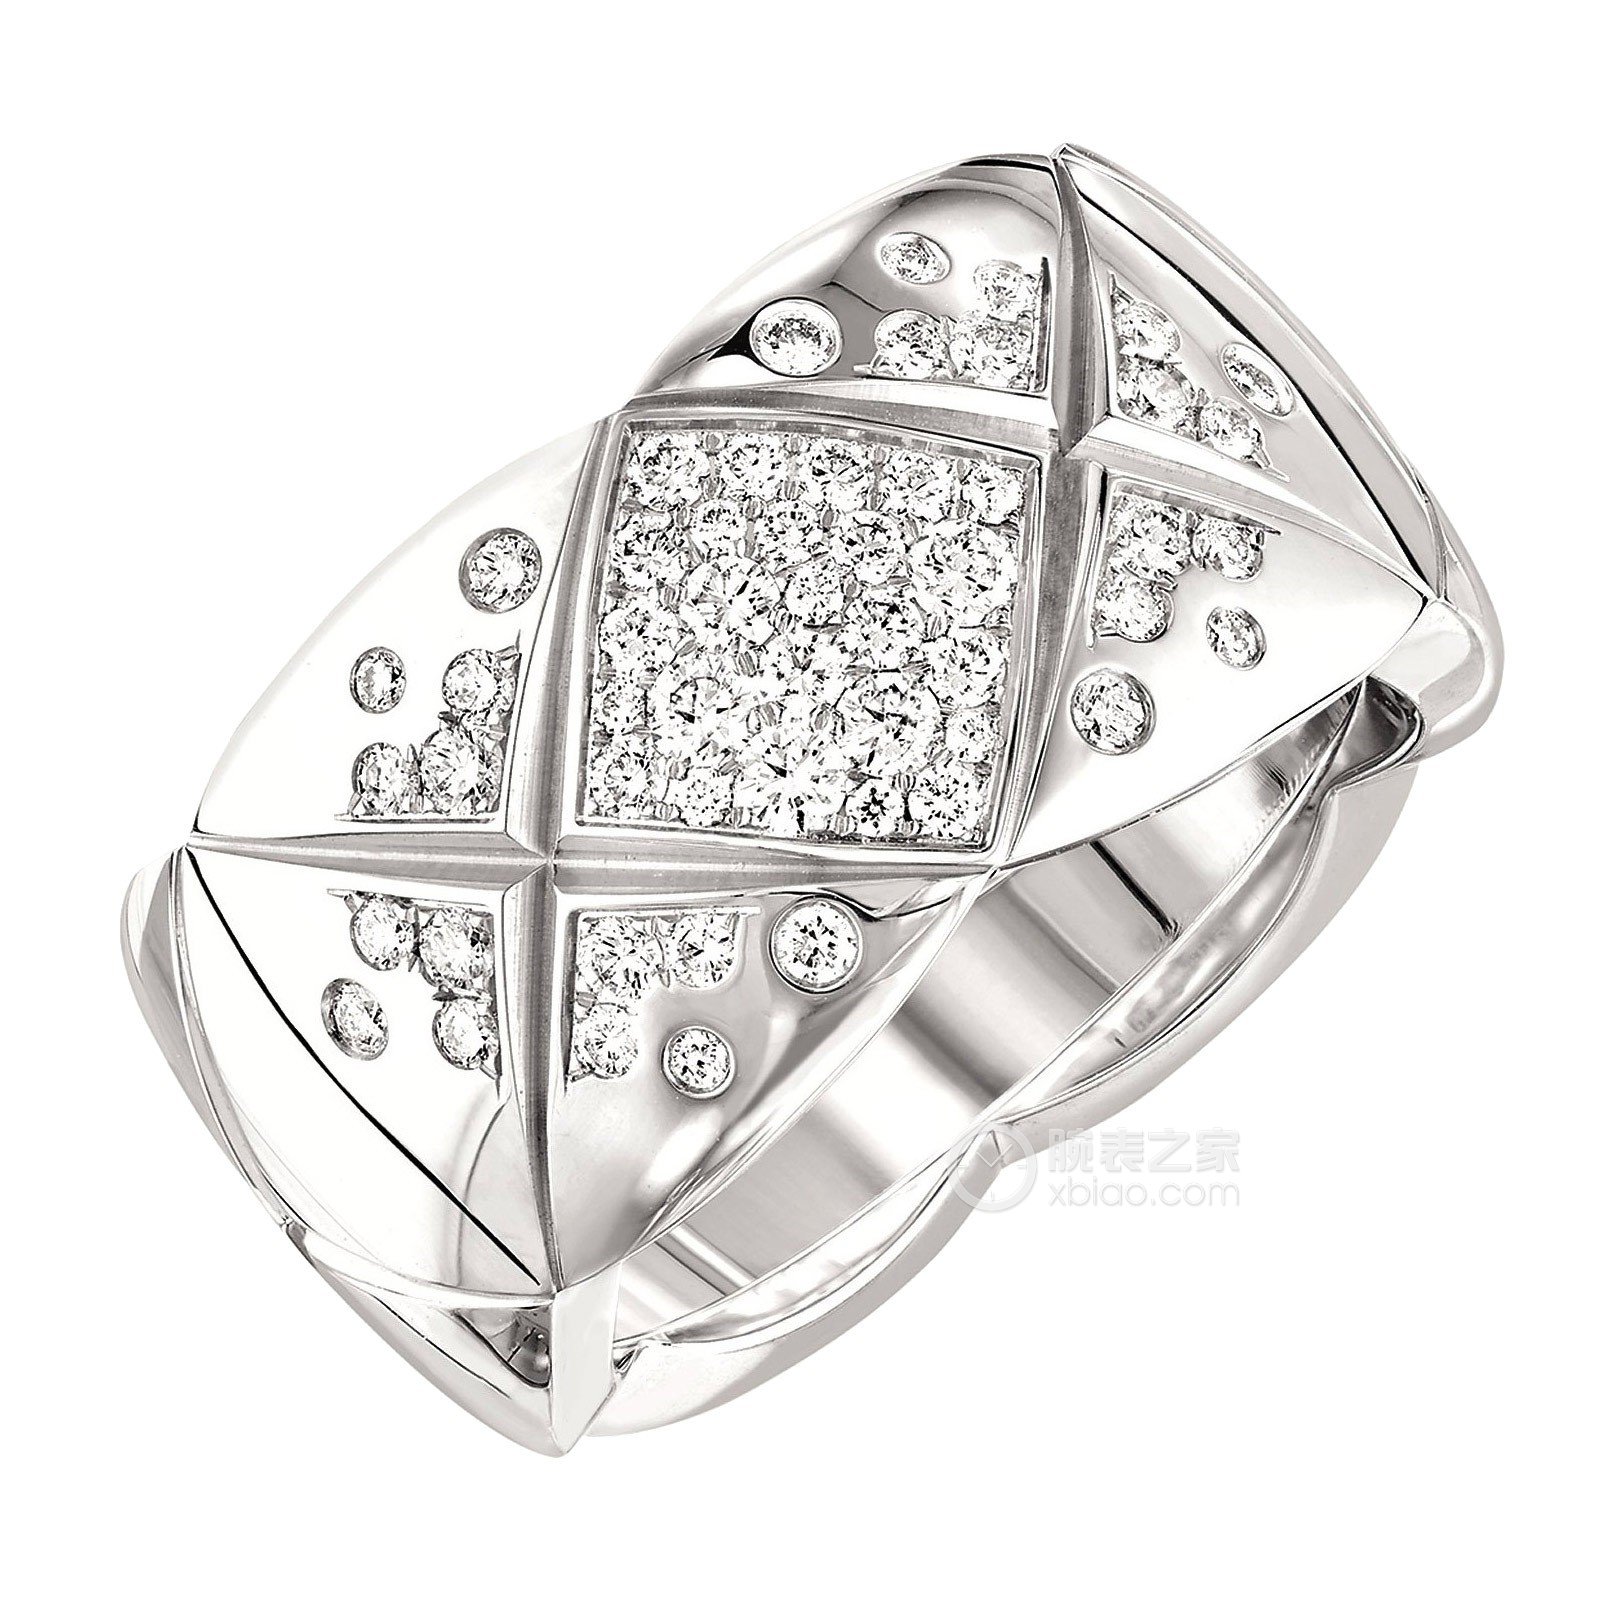 香奈儿COCO CRUSH系列18k白金镶钻戒指戒指